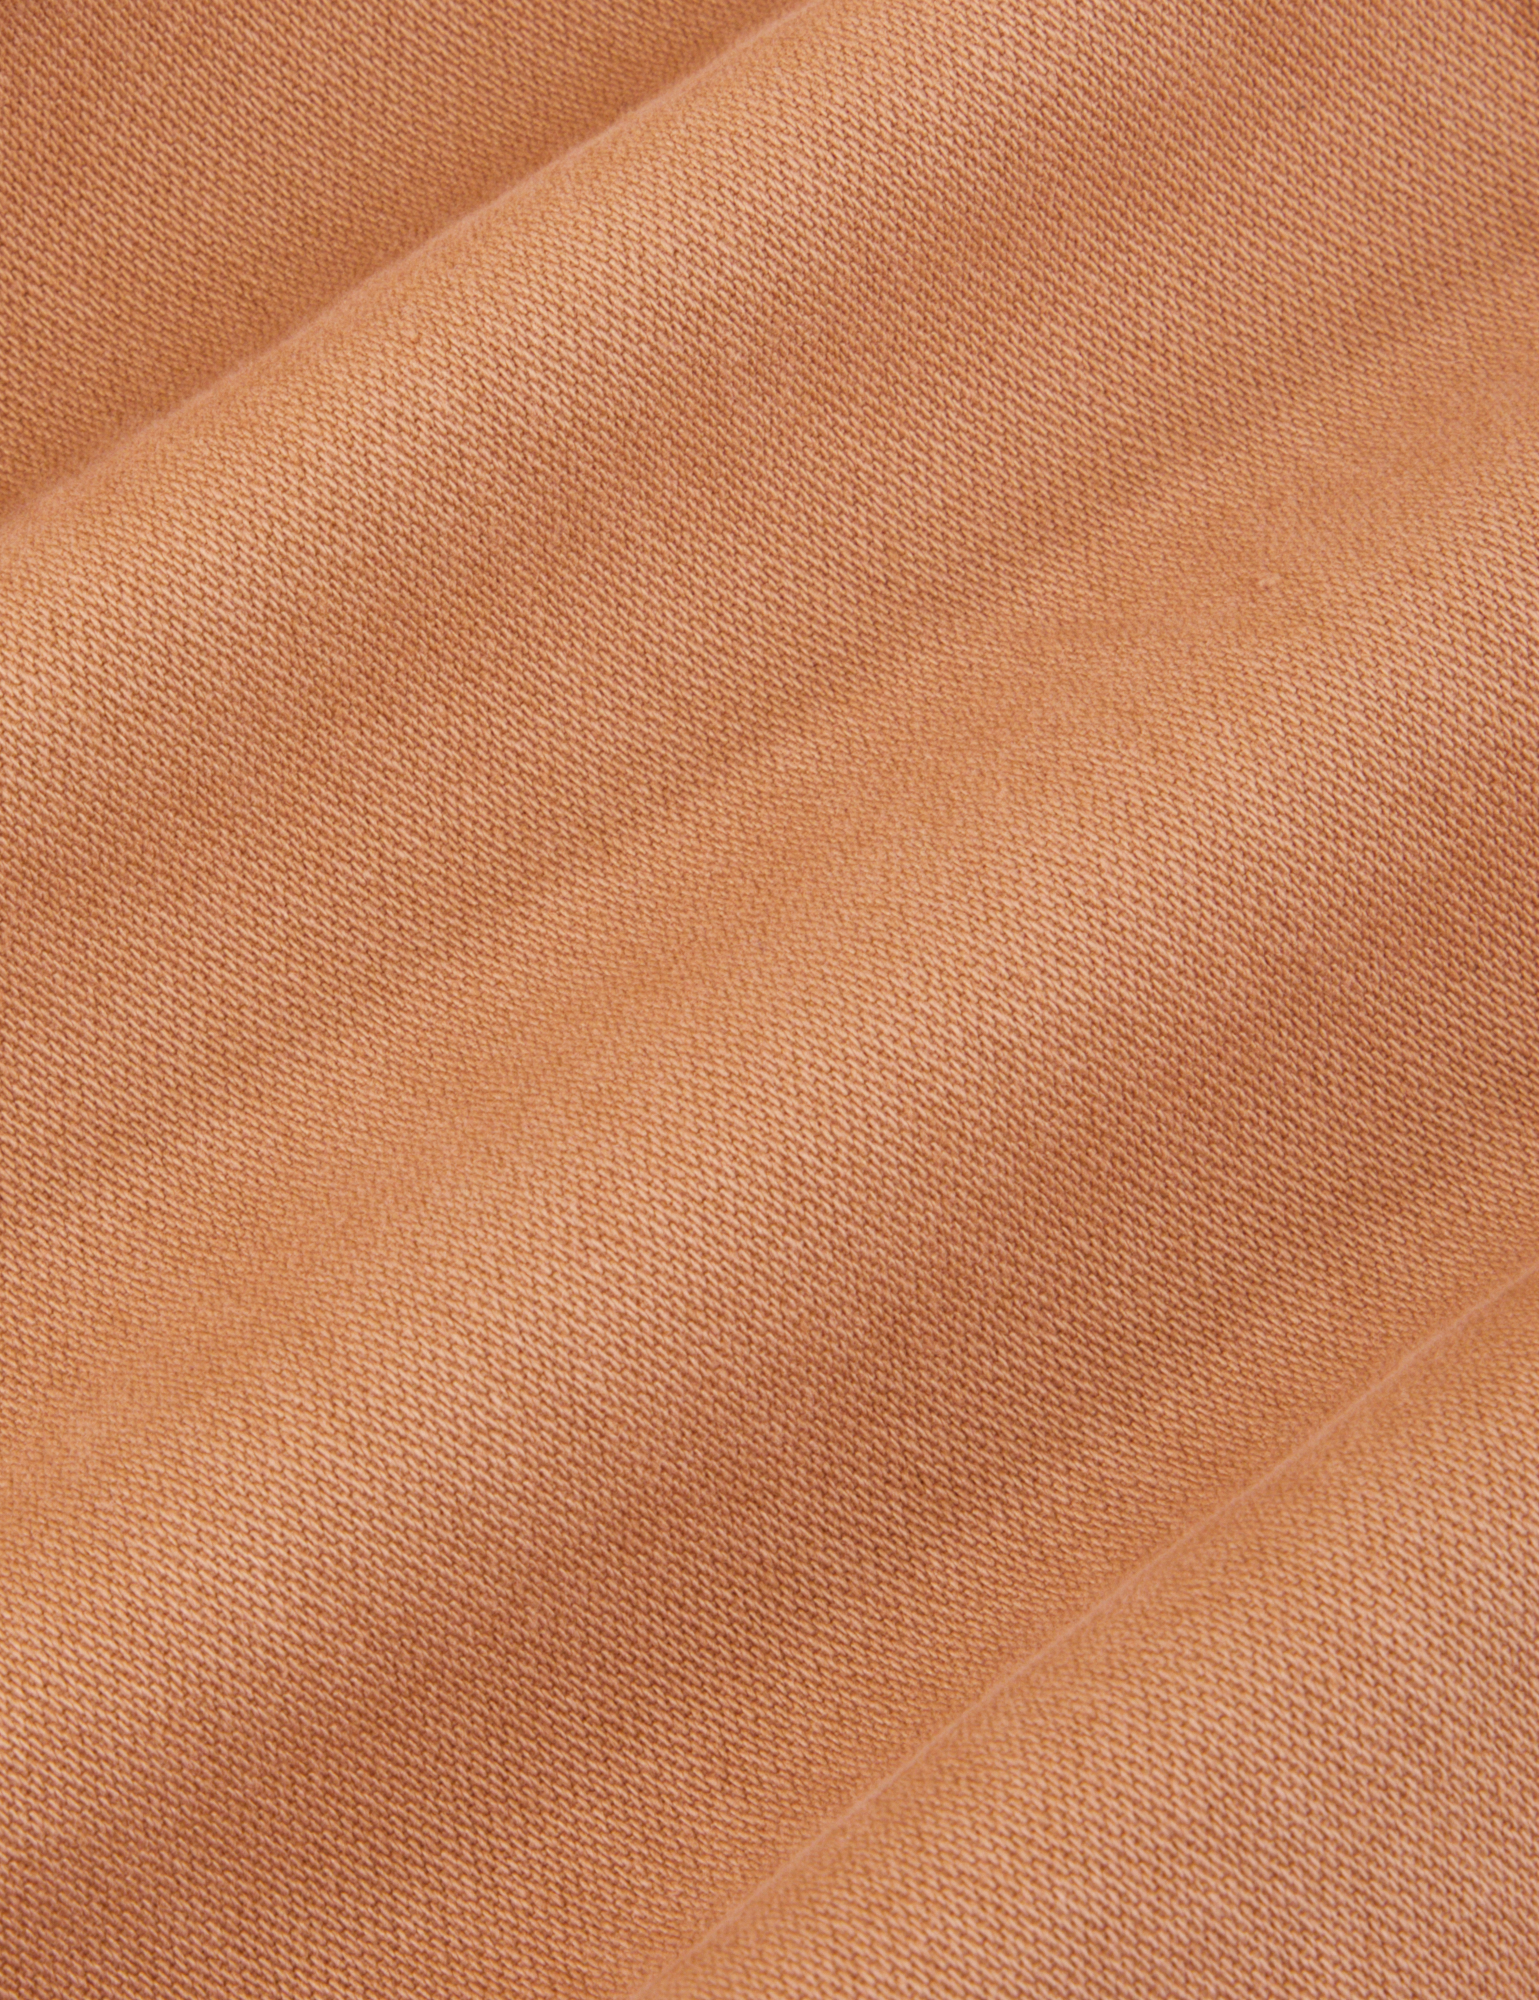 Original Overalls in Tan fabric detail